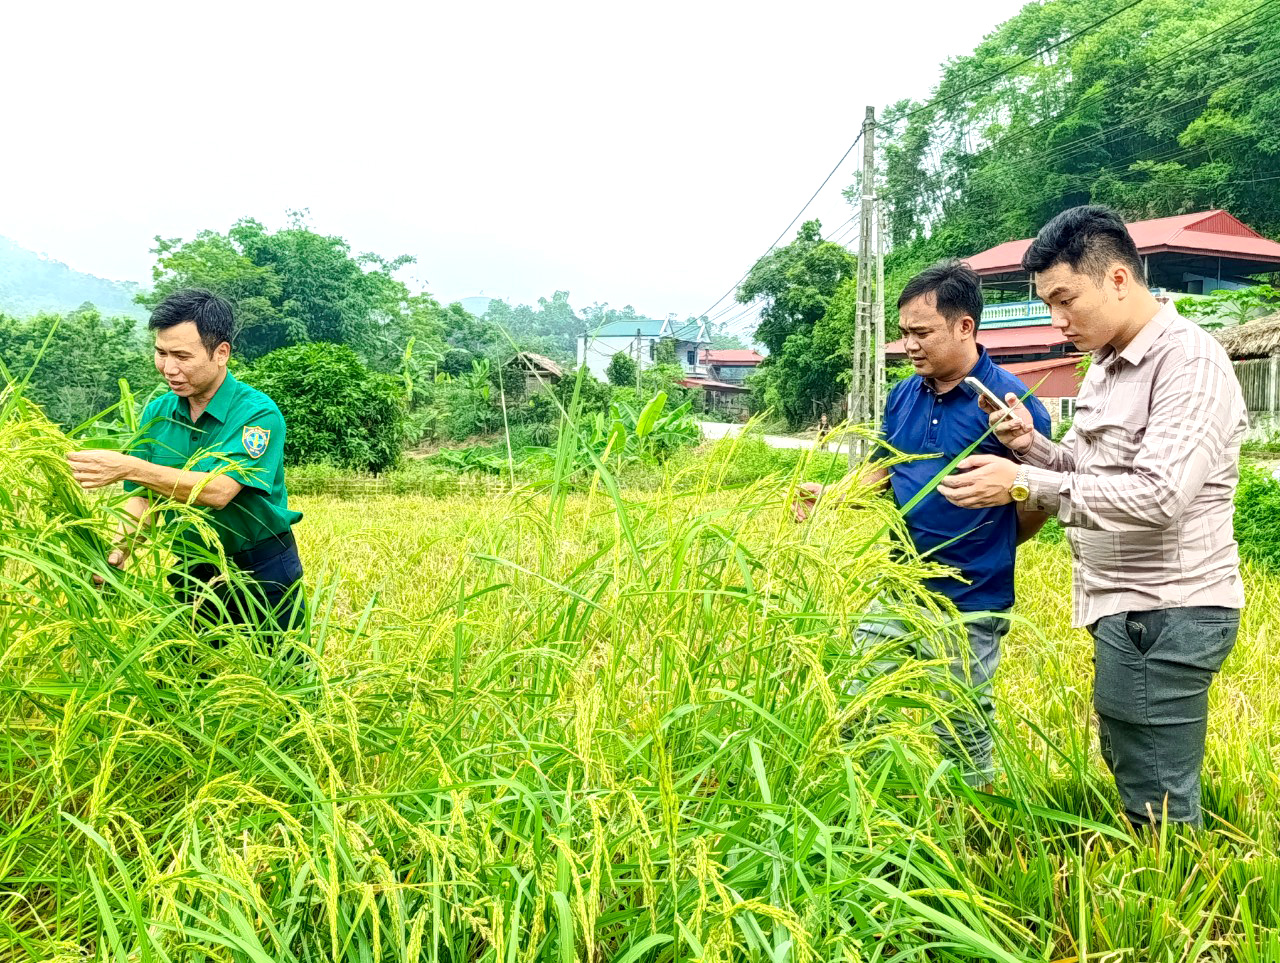 Hàng trăm hộ dân Phú Thọ mất trắng vụ xuân vì mua giống lúa lạ được "nổ" siêu năng suất trên mạng xã hội - Ảnh 2.